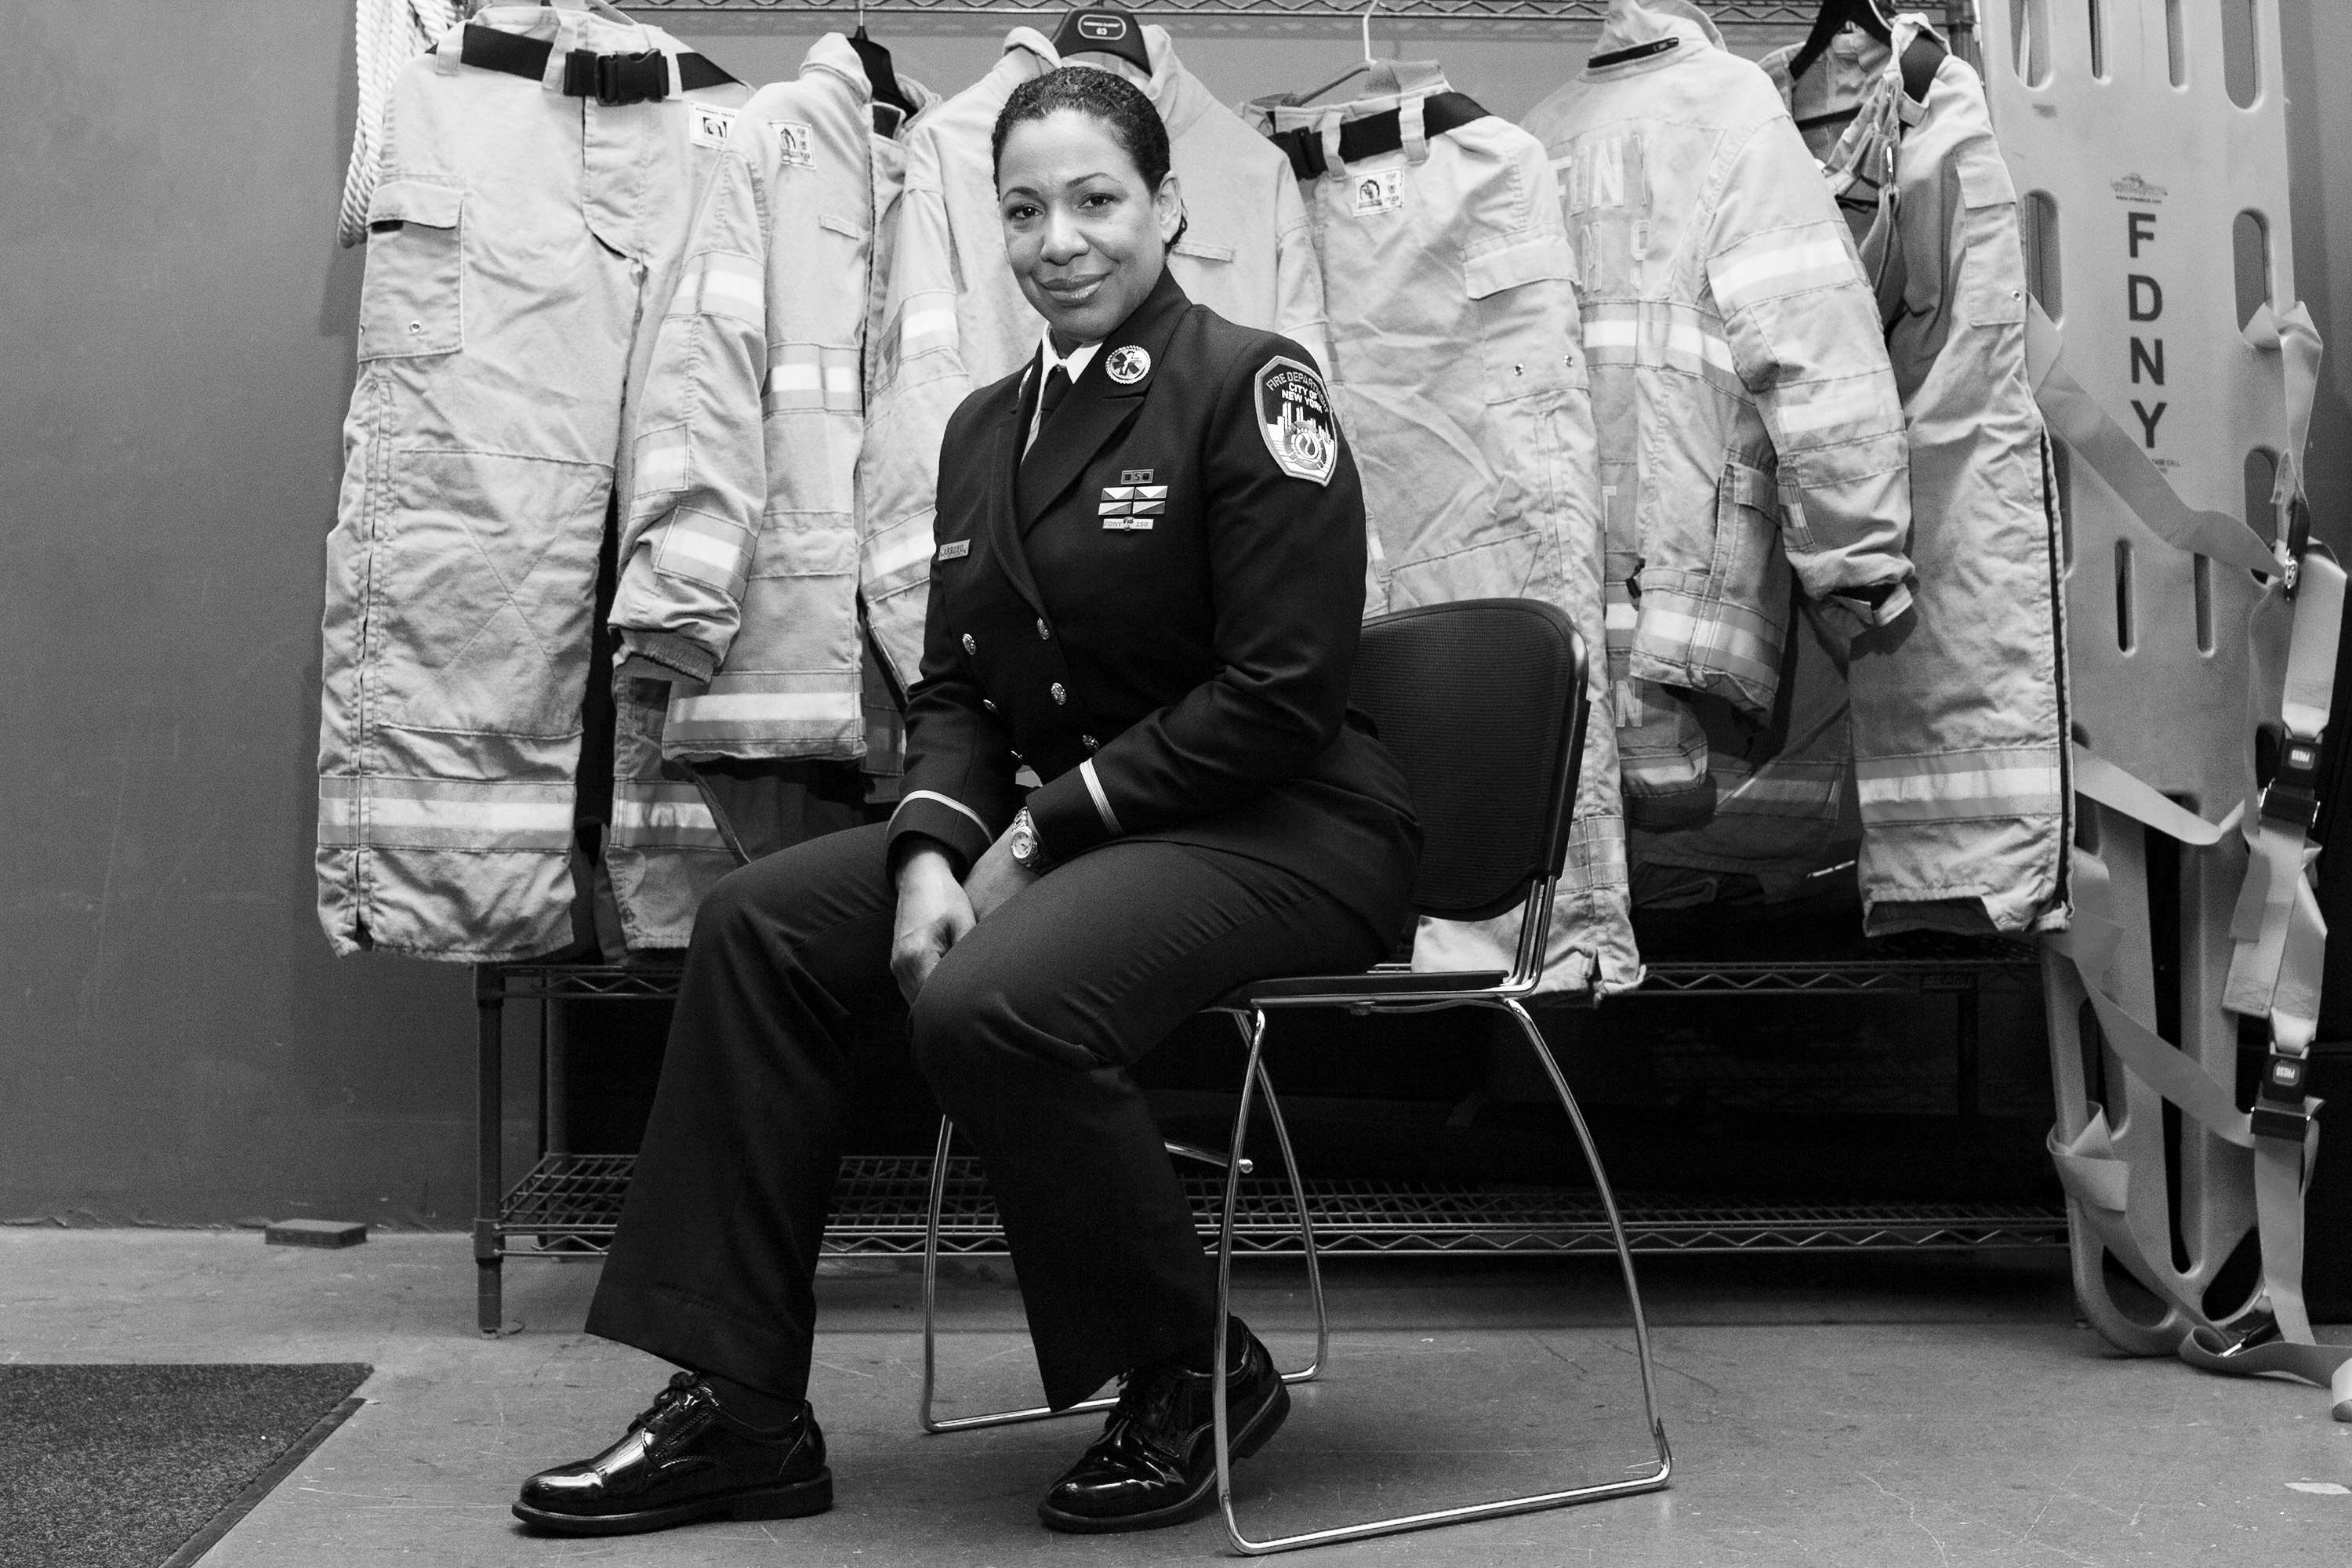 Lt-Juliette-Arroyo-Brooklyn-NYC-FDNY-2-Photo-Jen-Davis